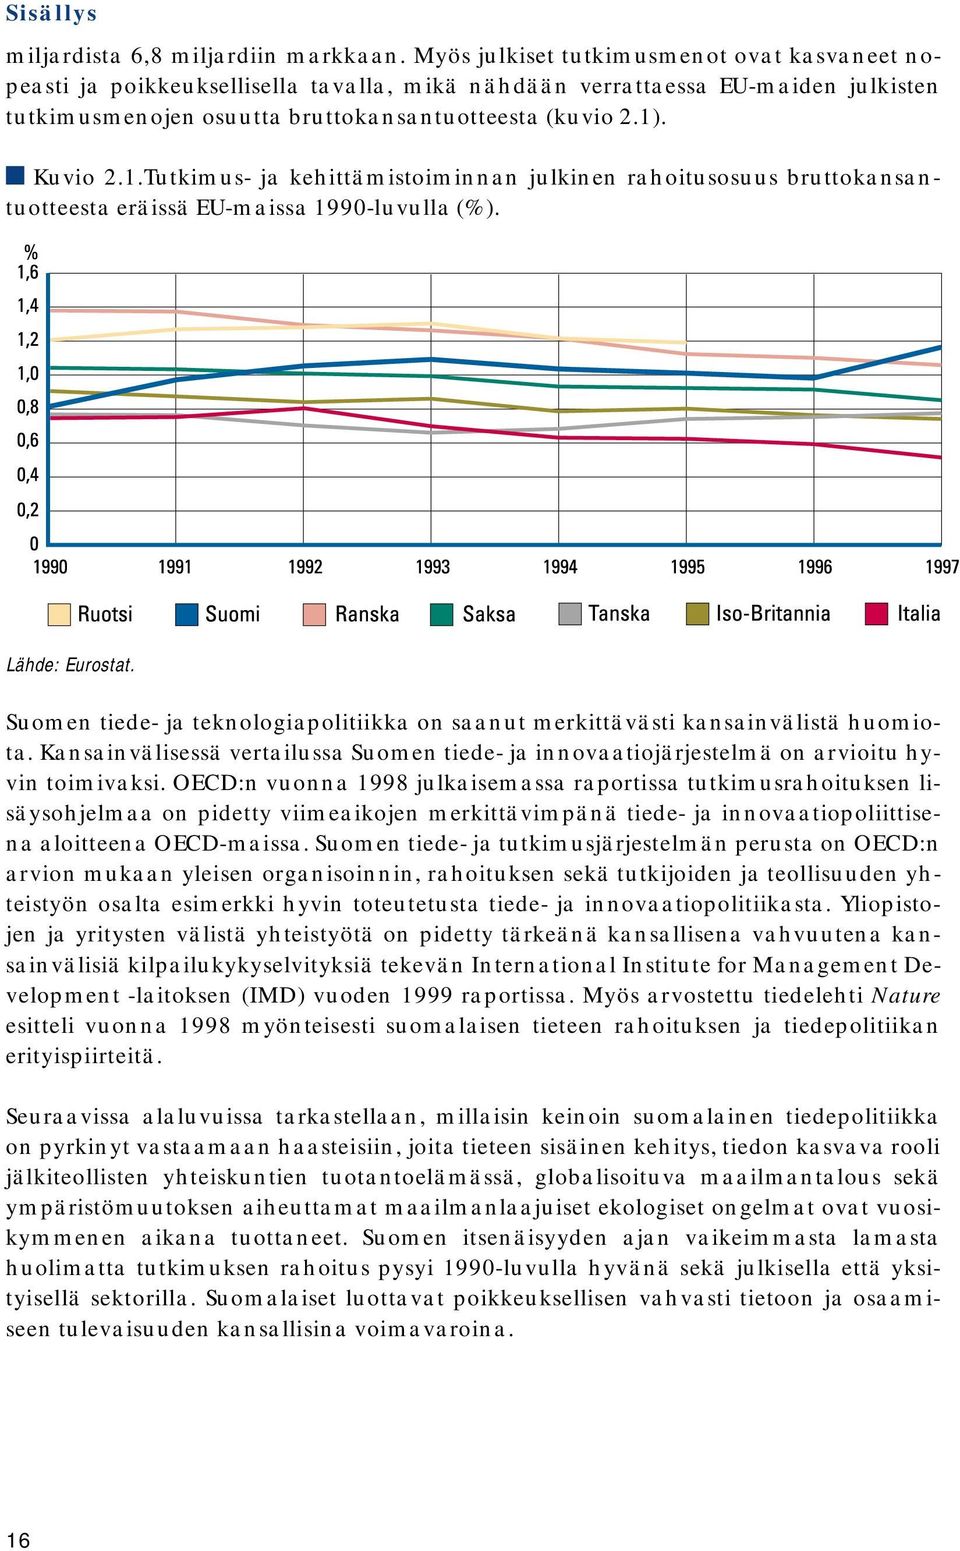 . Kuvio 2.1.Tutkimus- ja kehittämistoiminnan julkinen rahoitusosuus bruttokansantuotteesta eräissä EU-maissa 1990-luvulla (%). Lähde: Eurostat.